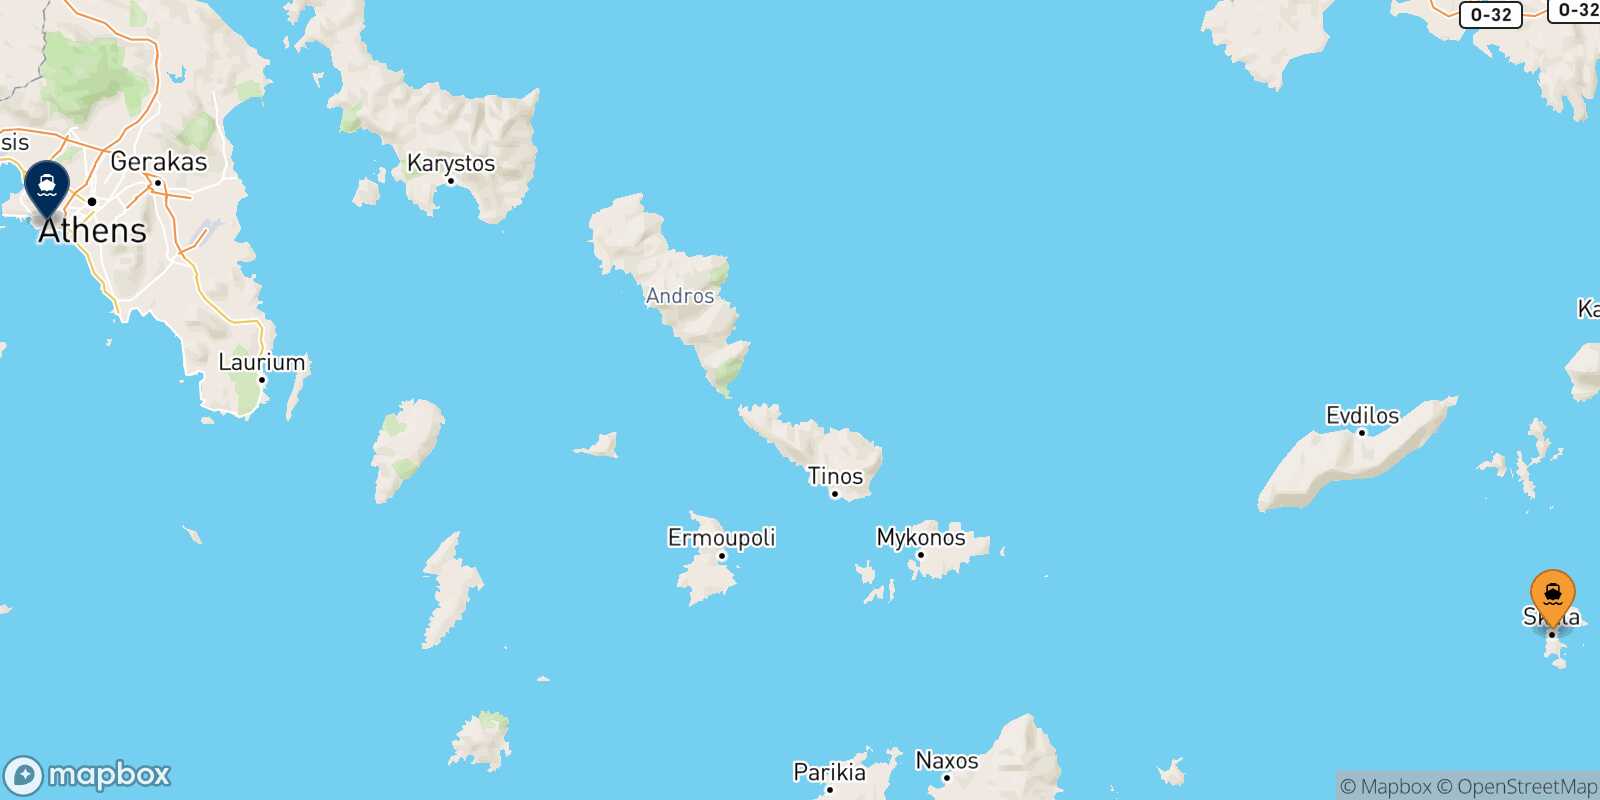 Patmos Piraeus route map